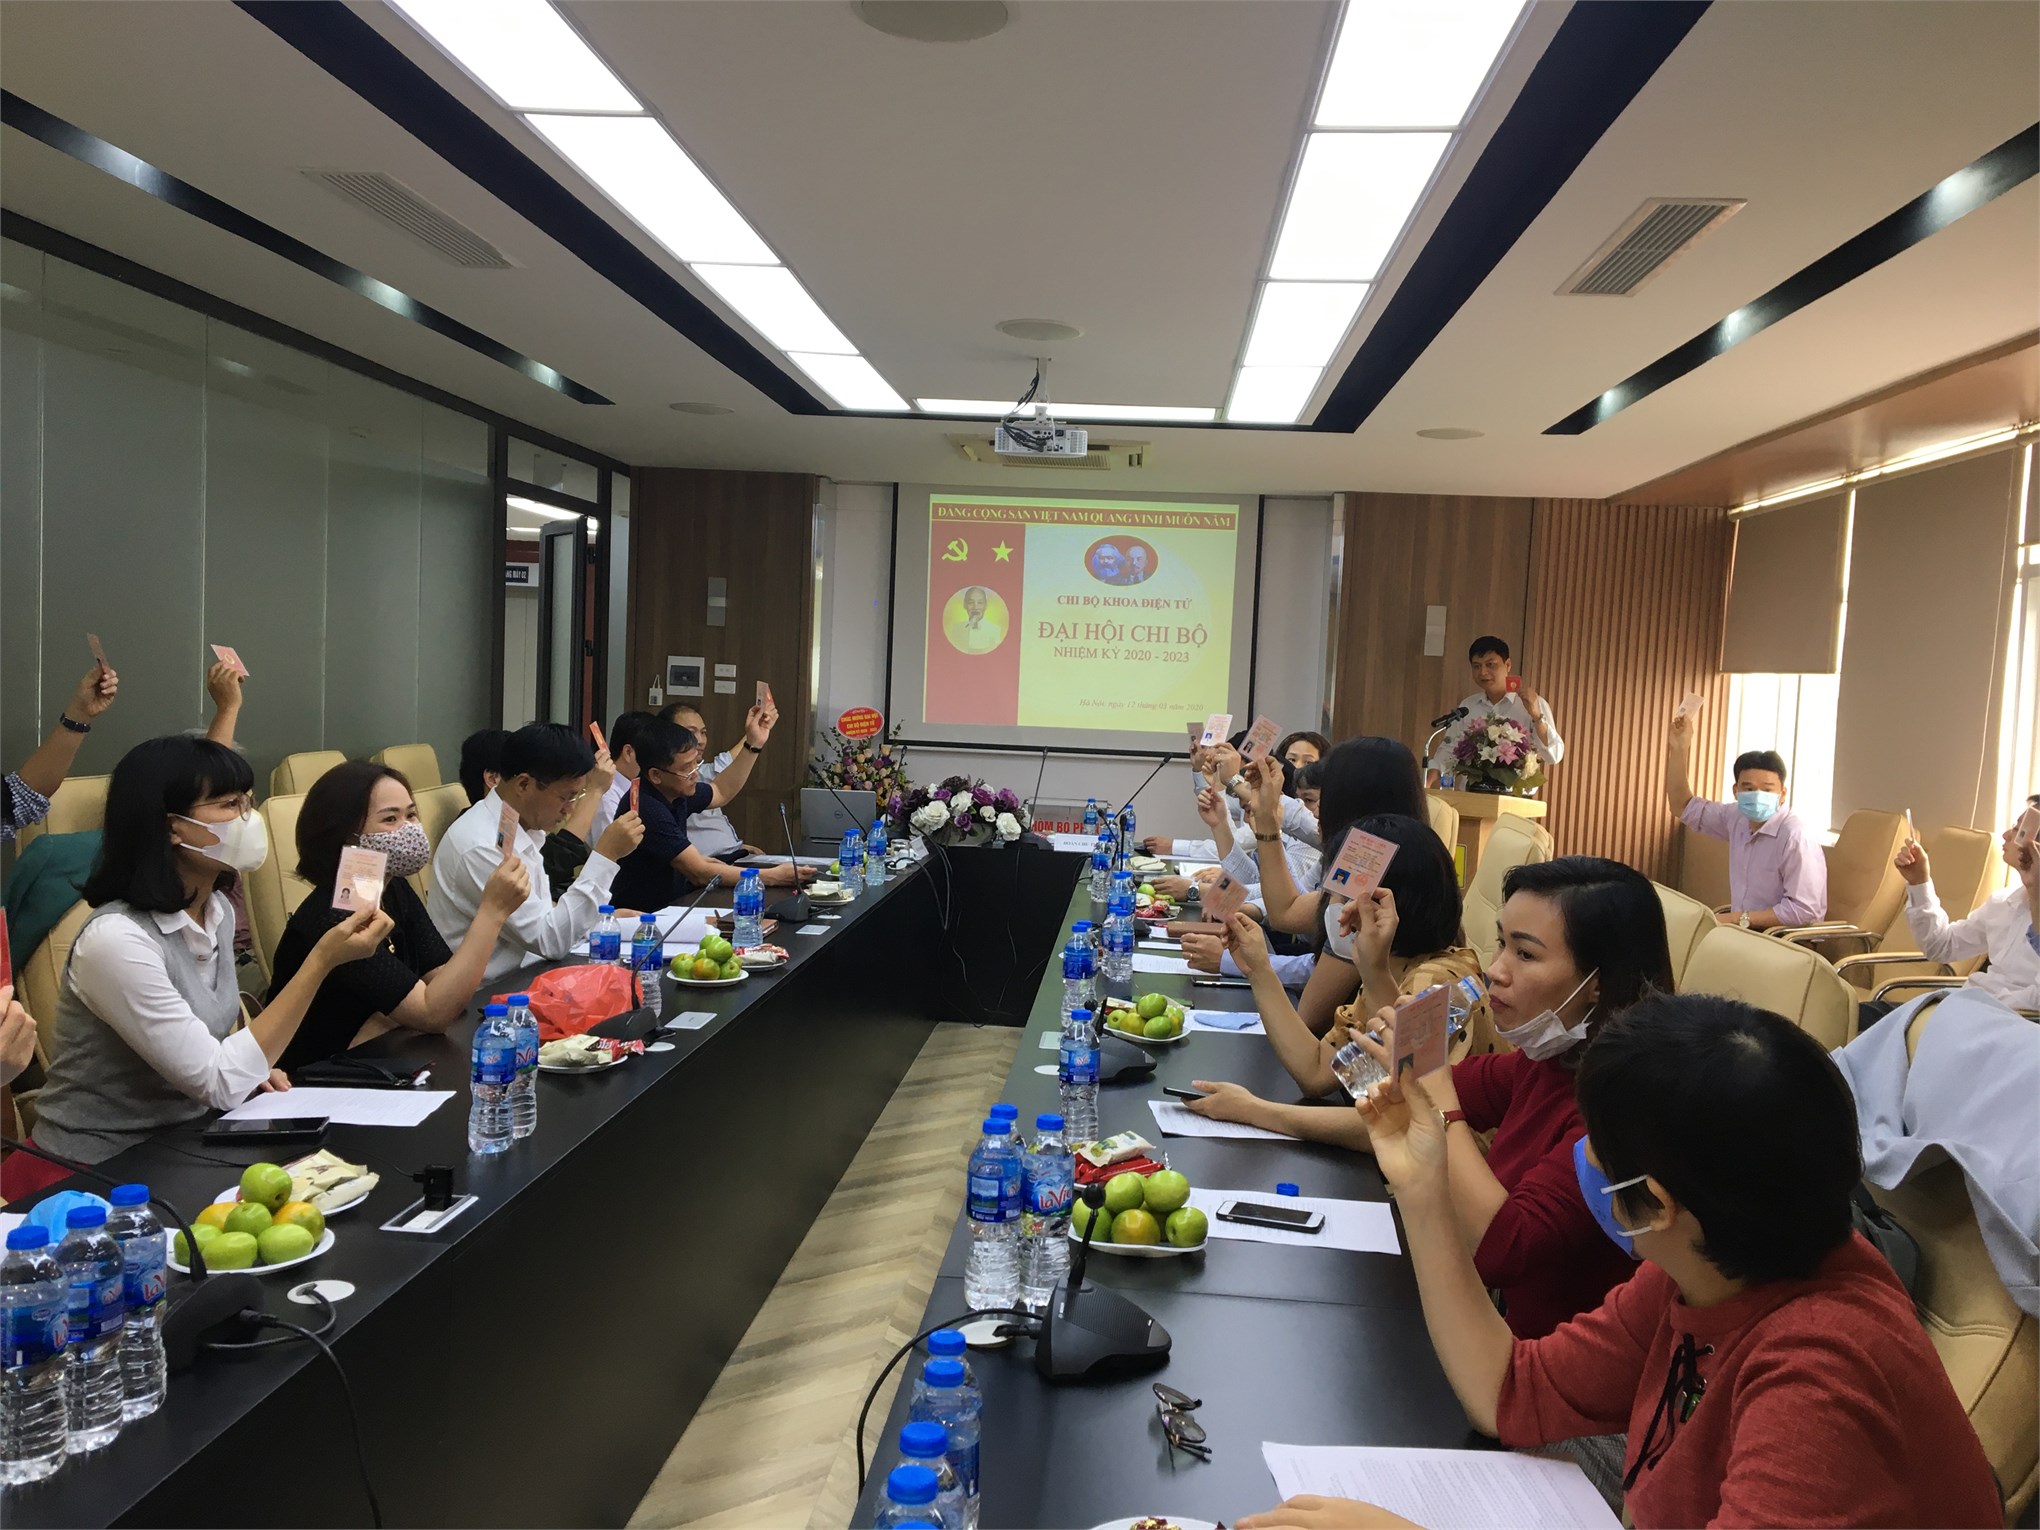 Đại hội Chi bộ Điện tử nhiệm kỳ 2020 - 2023 Đảng bộ Trường Đại học công nghiệp Hà Nội